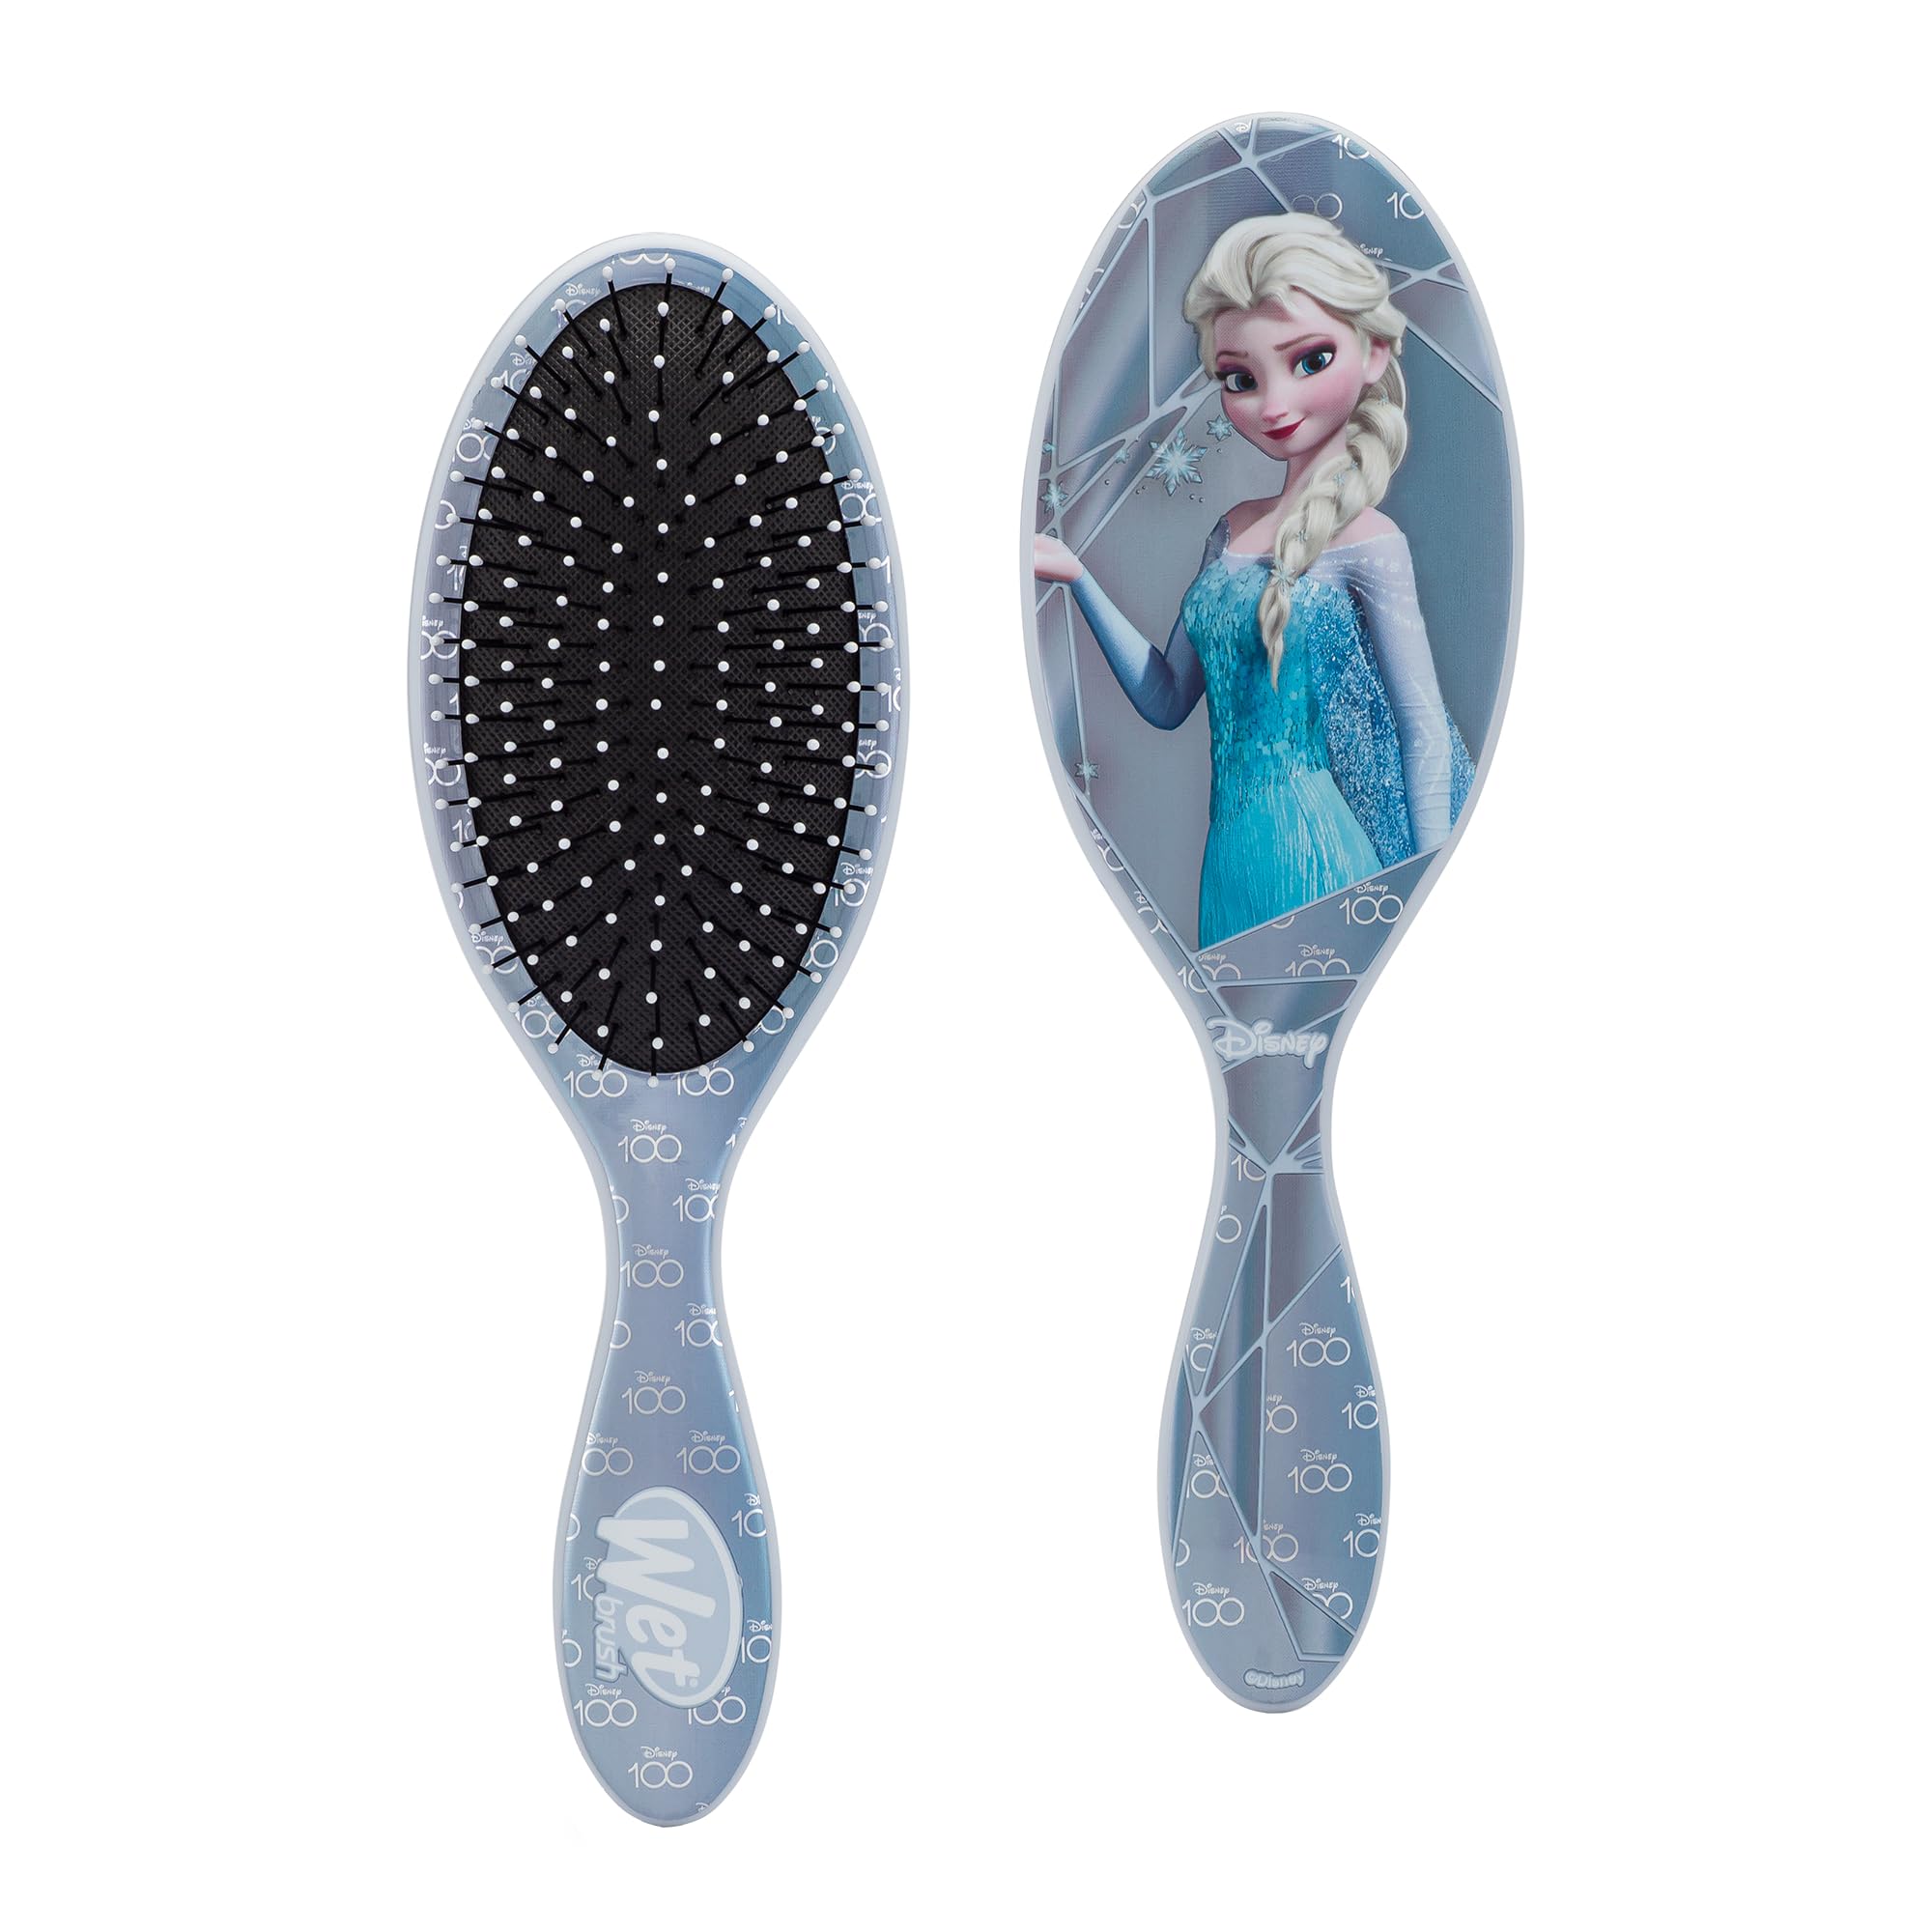 Wet Brush Original Detangling Brush, Elsa (Disney) - Detangler Brush with Soft & Flexible Bristles - Detangling Brush for Curly Hair - Tangle-Free Brush for Straight, Thick, & Wavy Hair